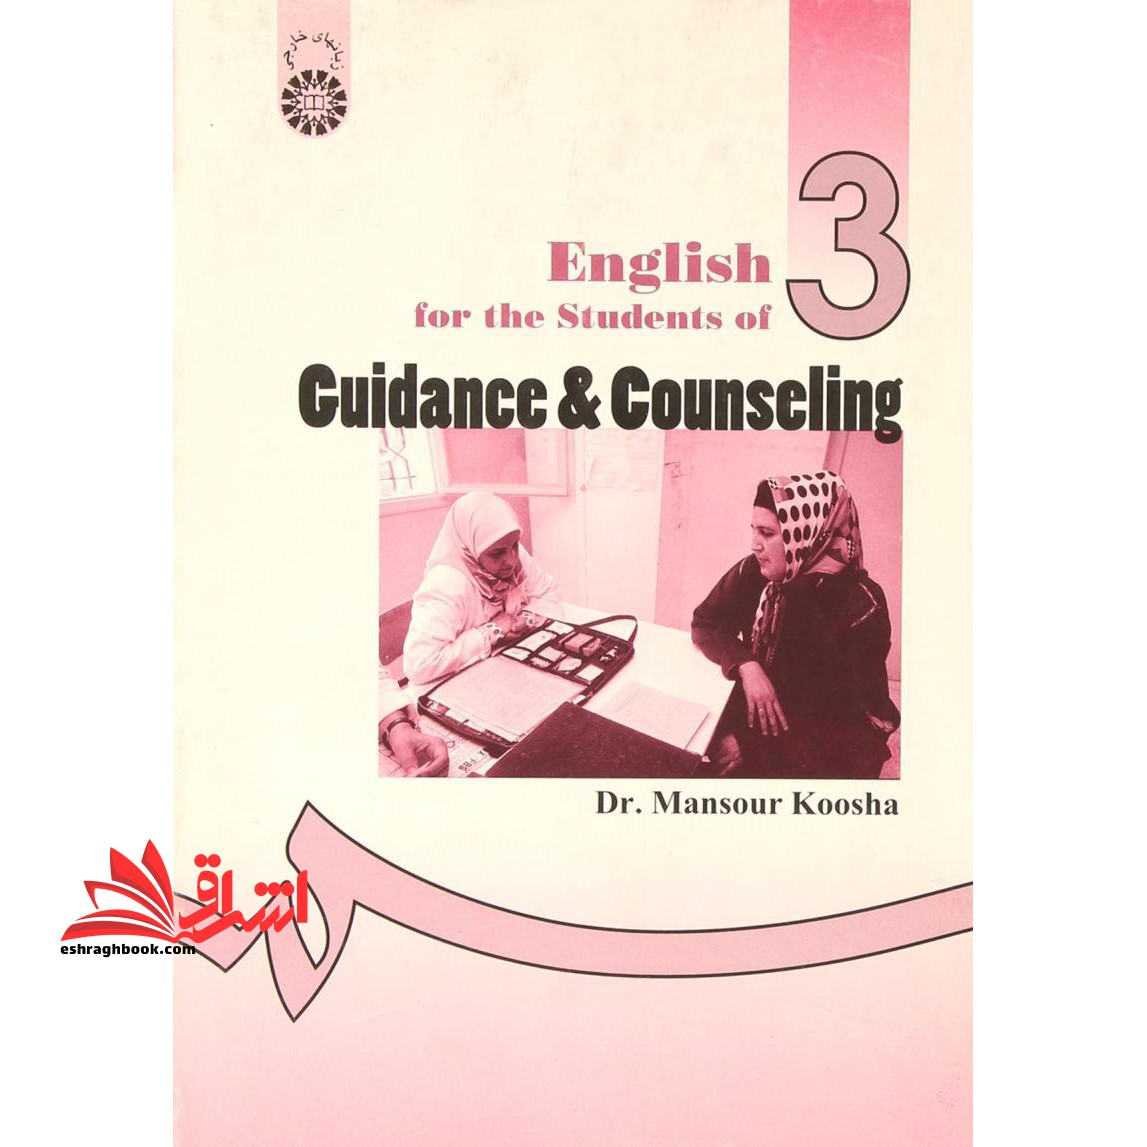 انگلیسی برای دانشجویان رشته راهنمایی و مشاوره English for the students of guidance & counseling کد ۴۸۱